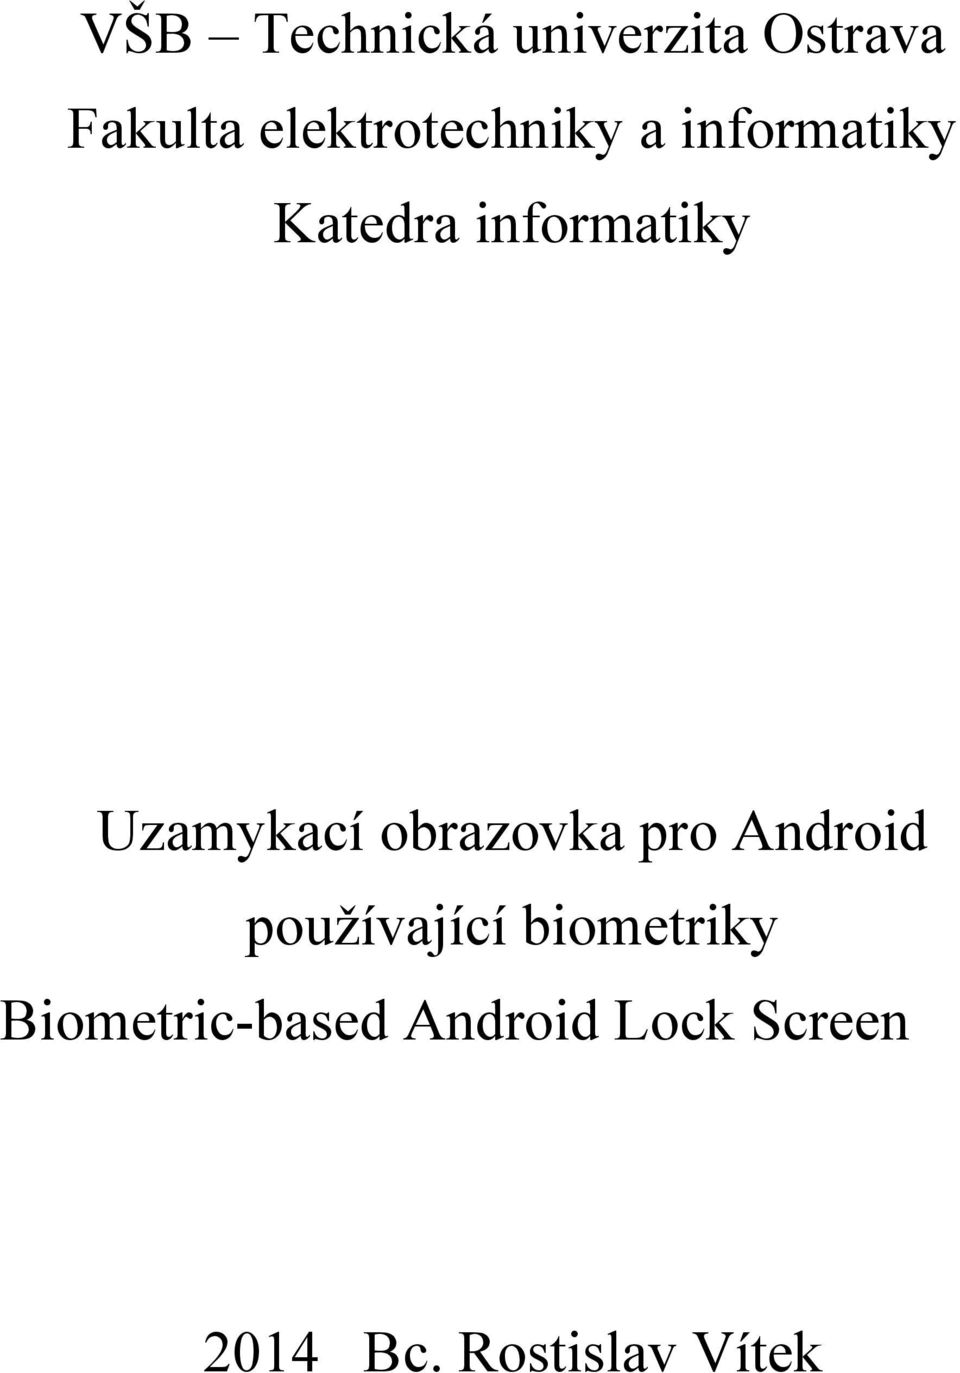 Uzamykací obrazovka pro Android používající